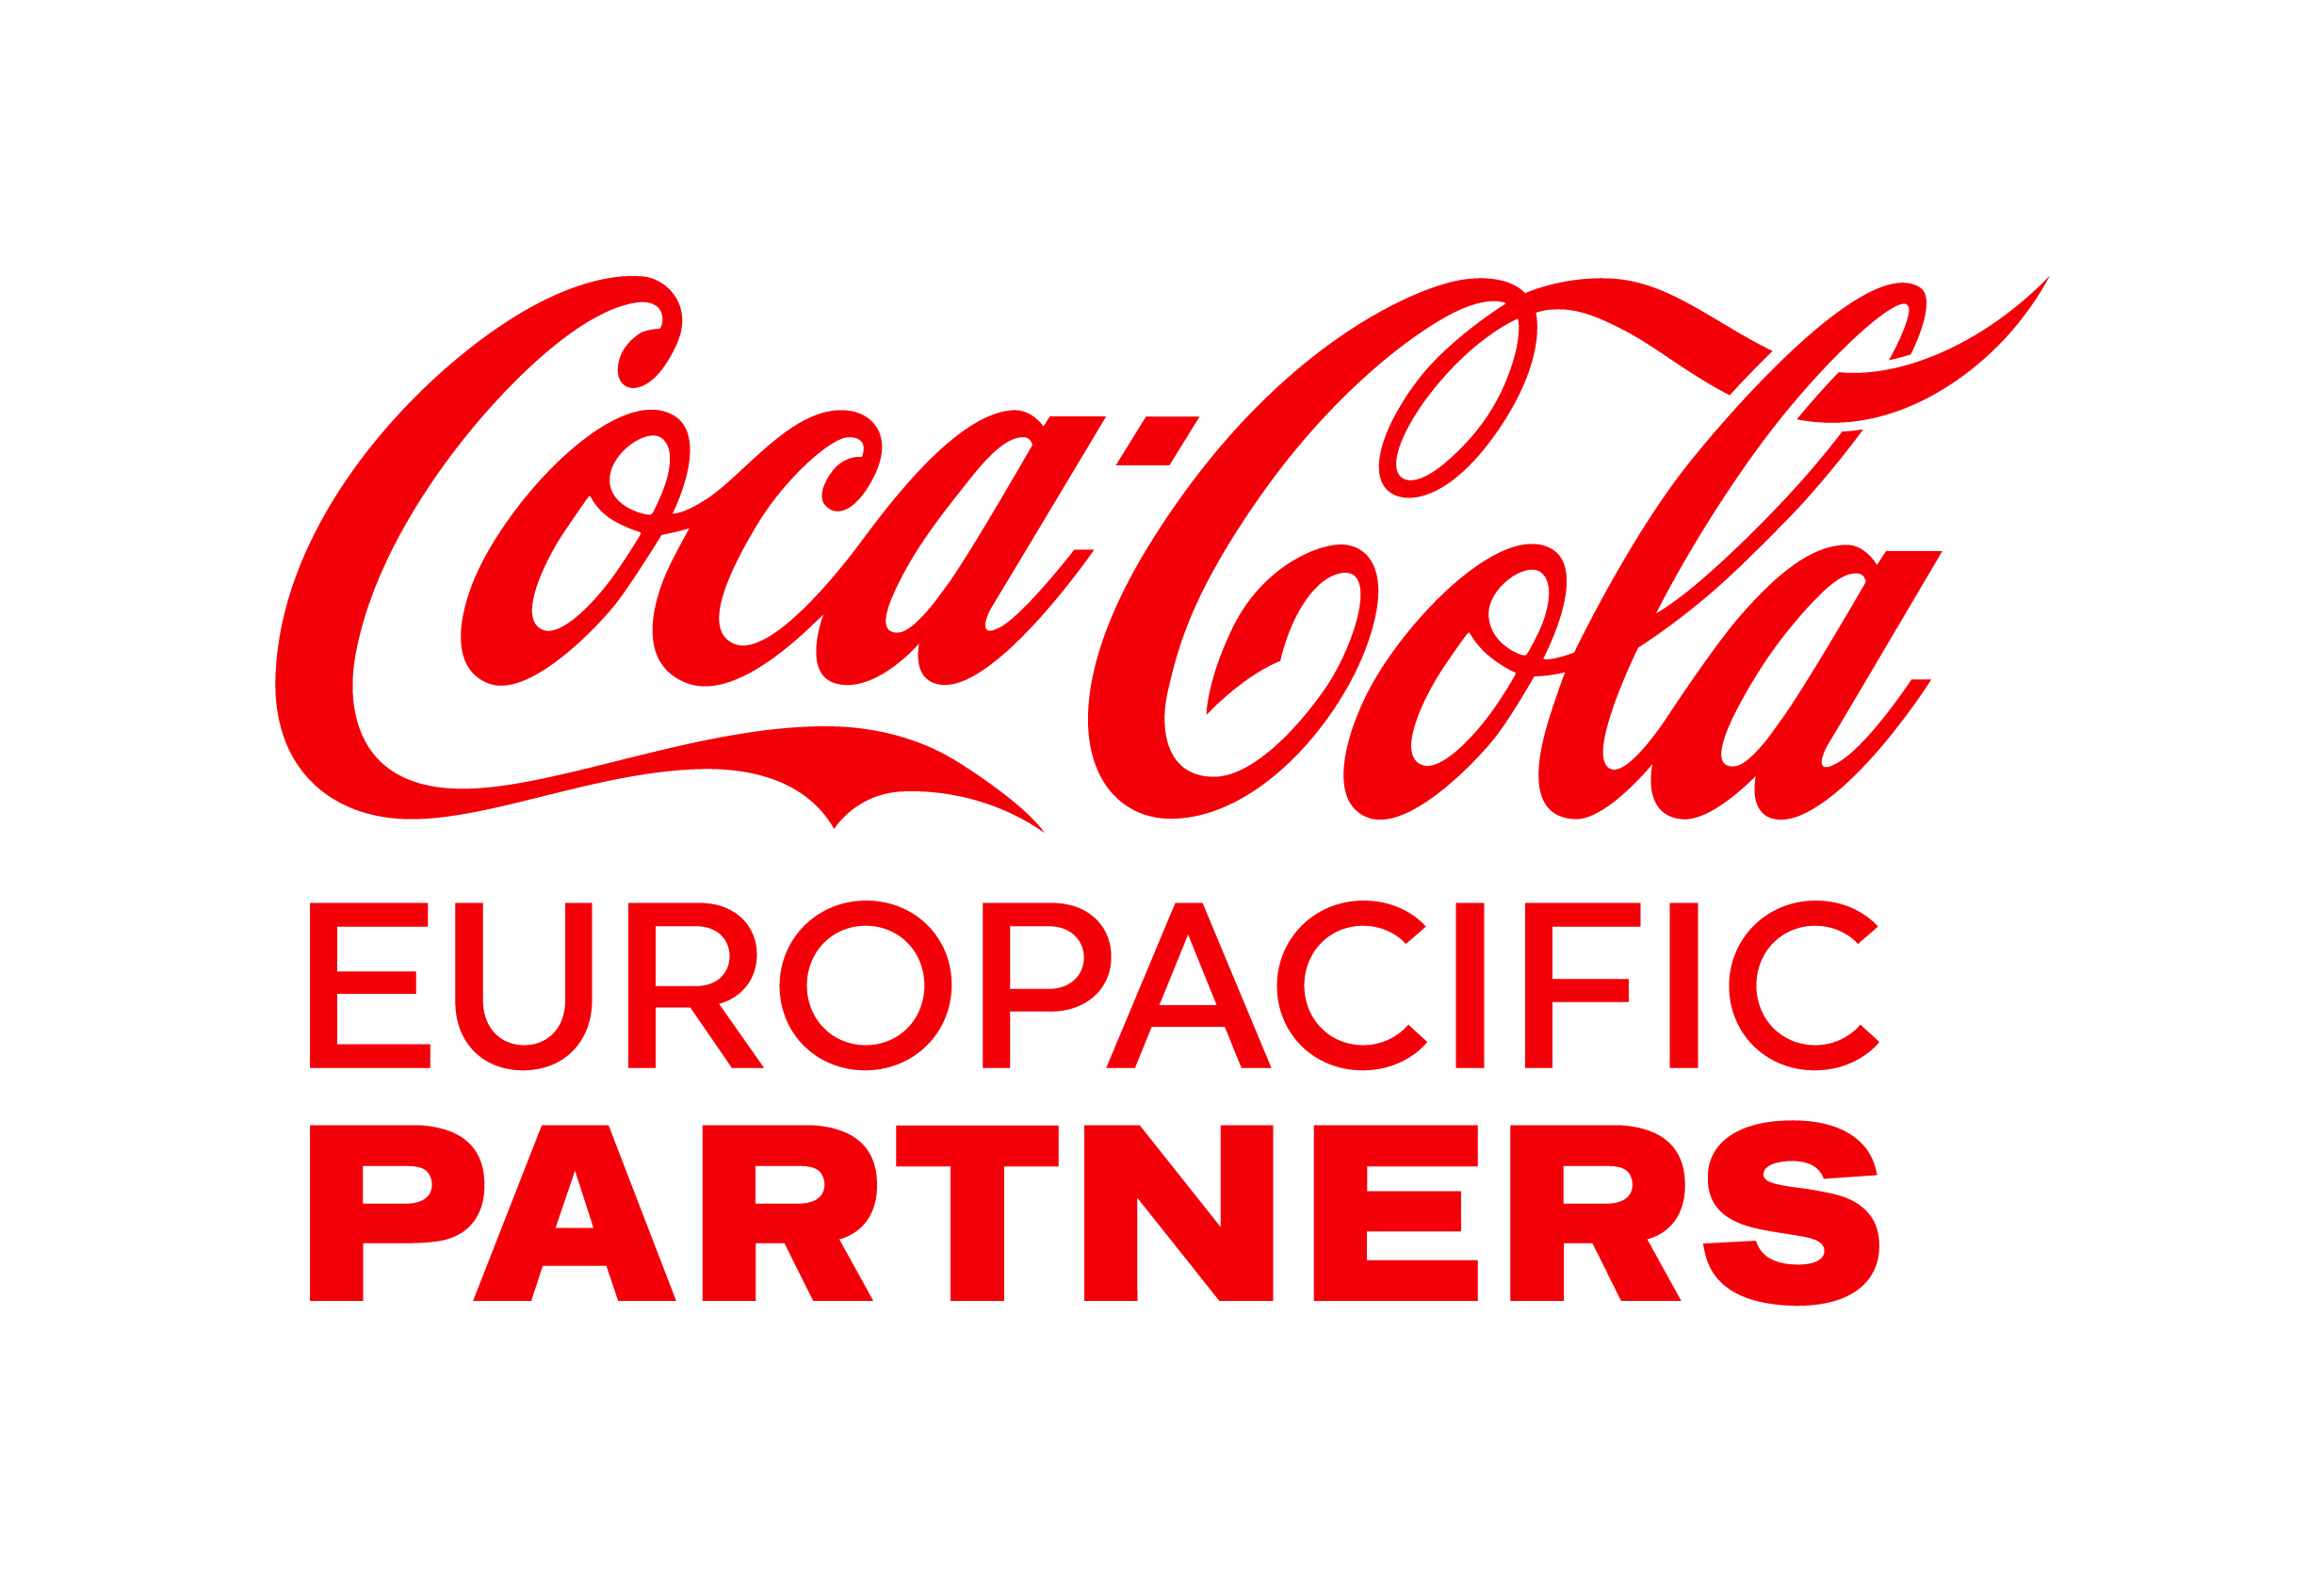 cceuropacificp_logo.jpg